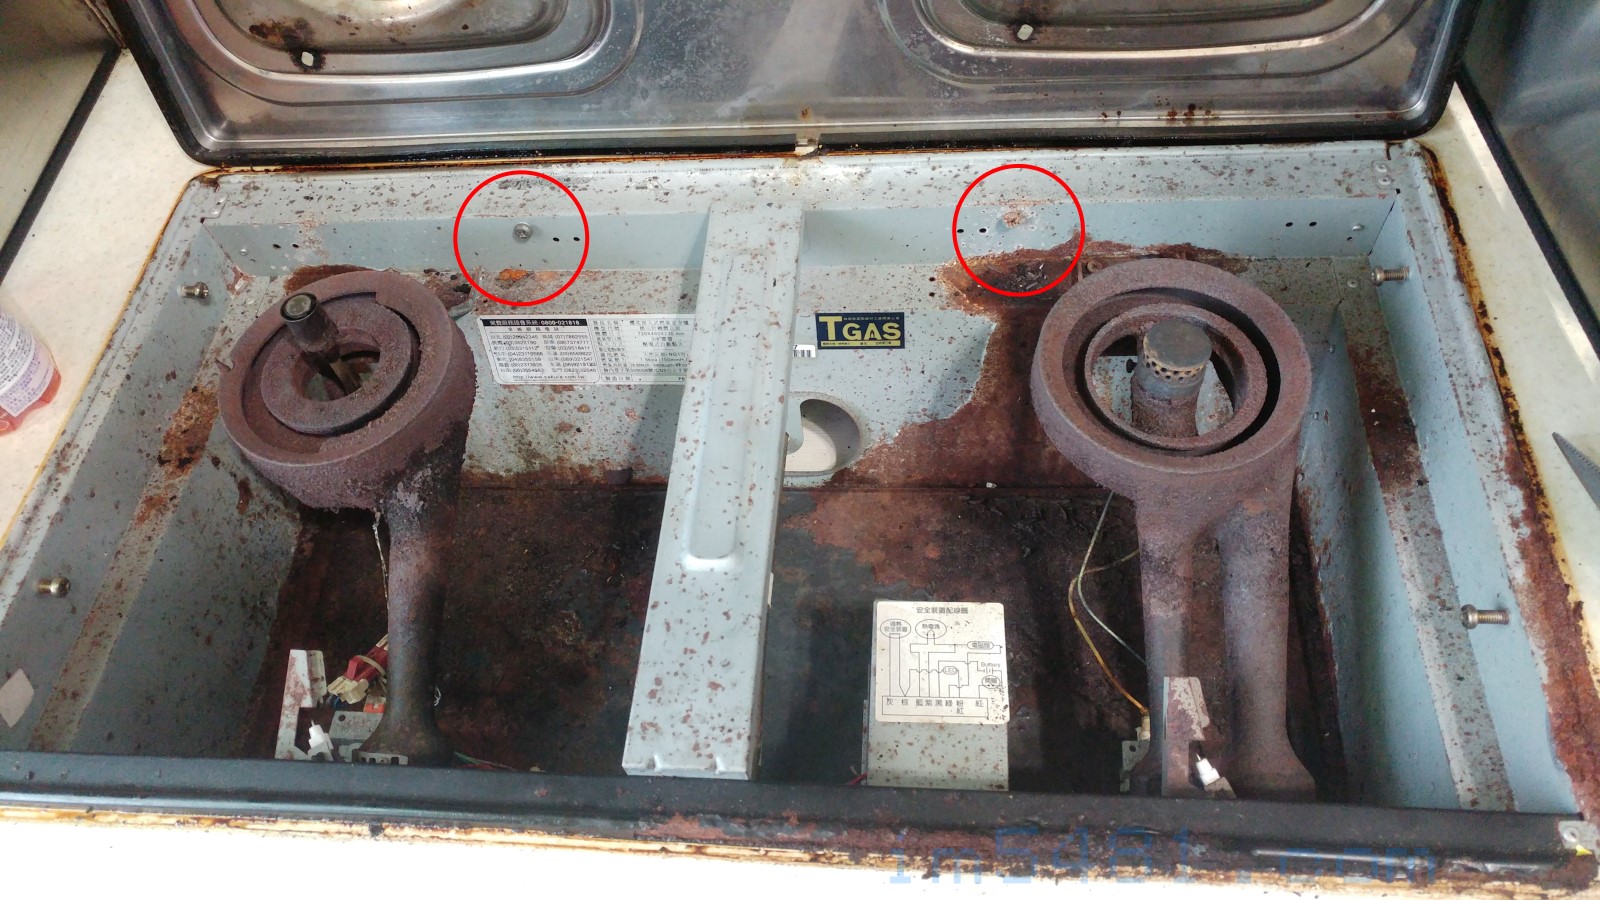 崁入式瓦斯爐只有用了兩個螺絲固定，拔下之後就可以取下瓦斯爐。